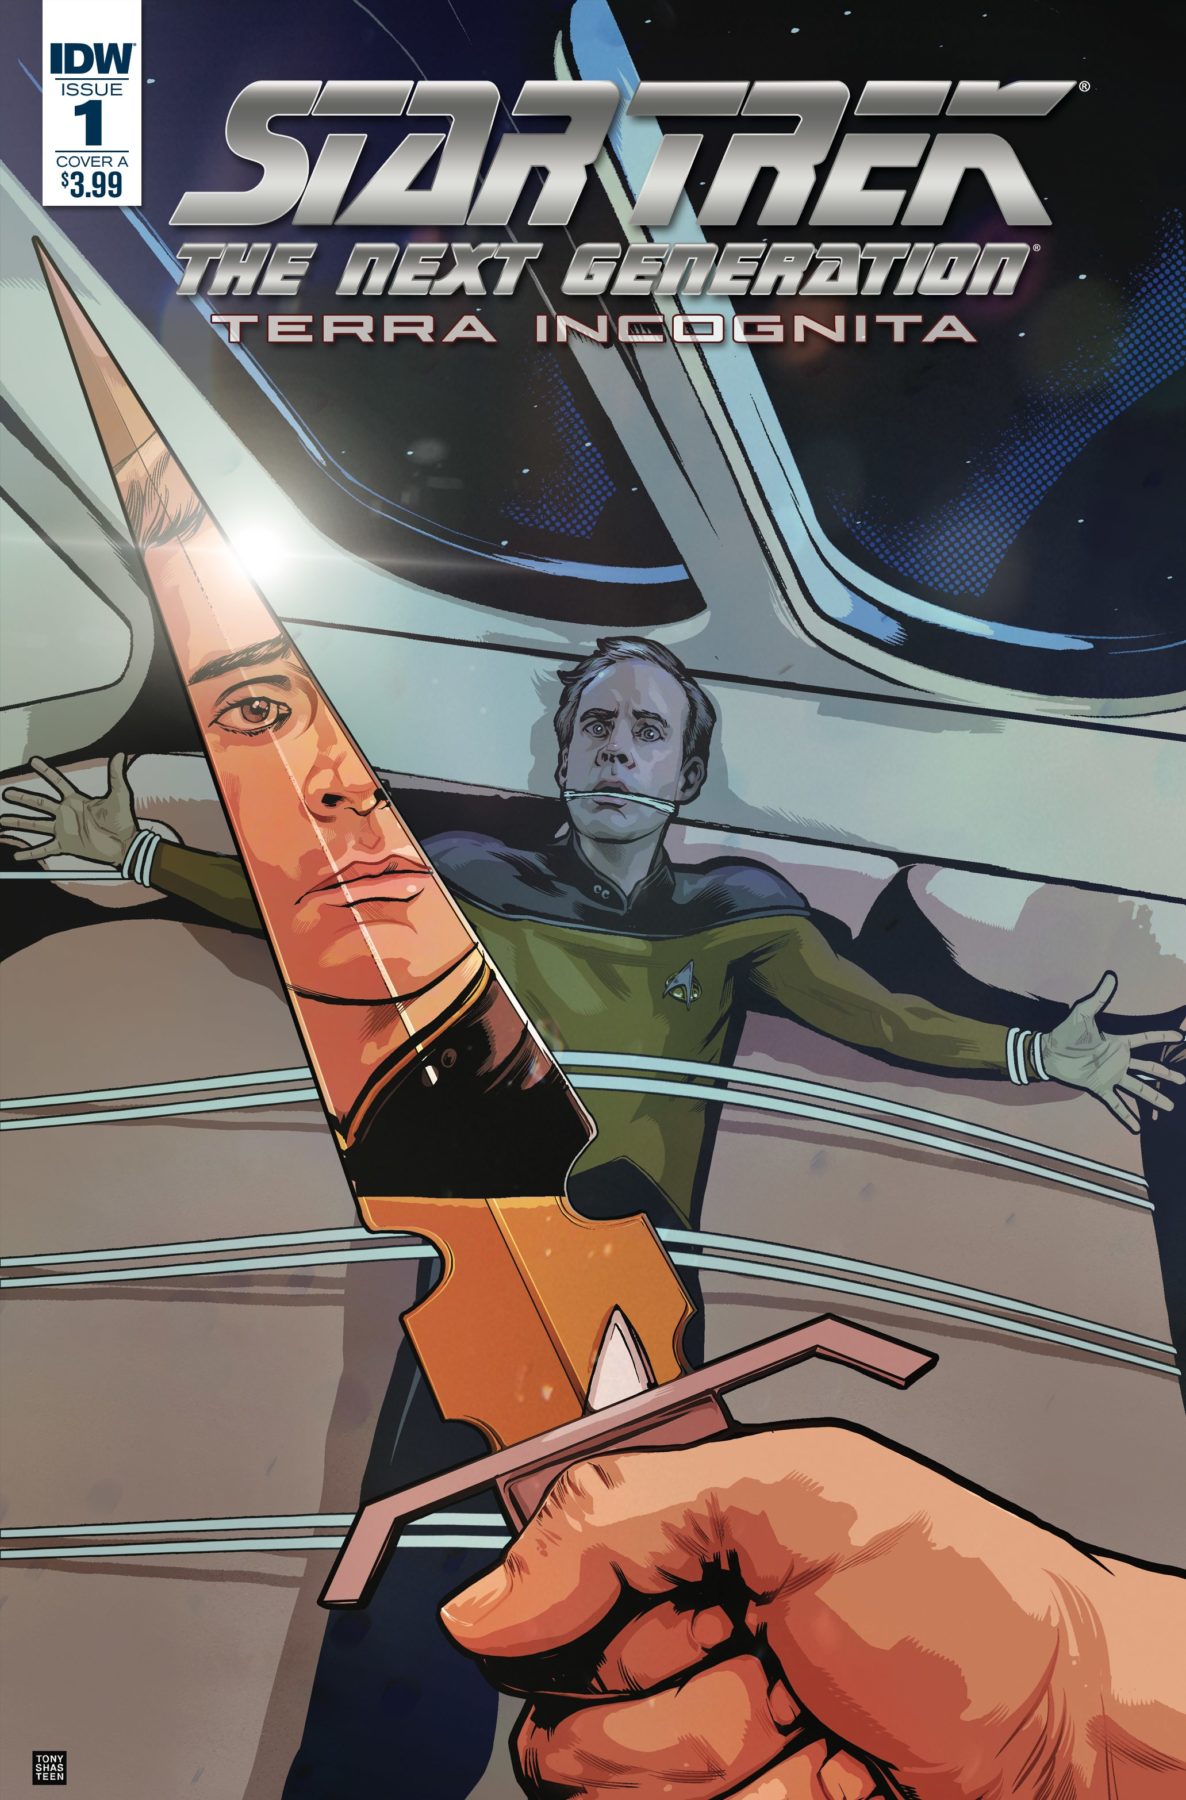 Star Trek: The Next Generation vuelve a los cómics para Terra Incognita